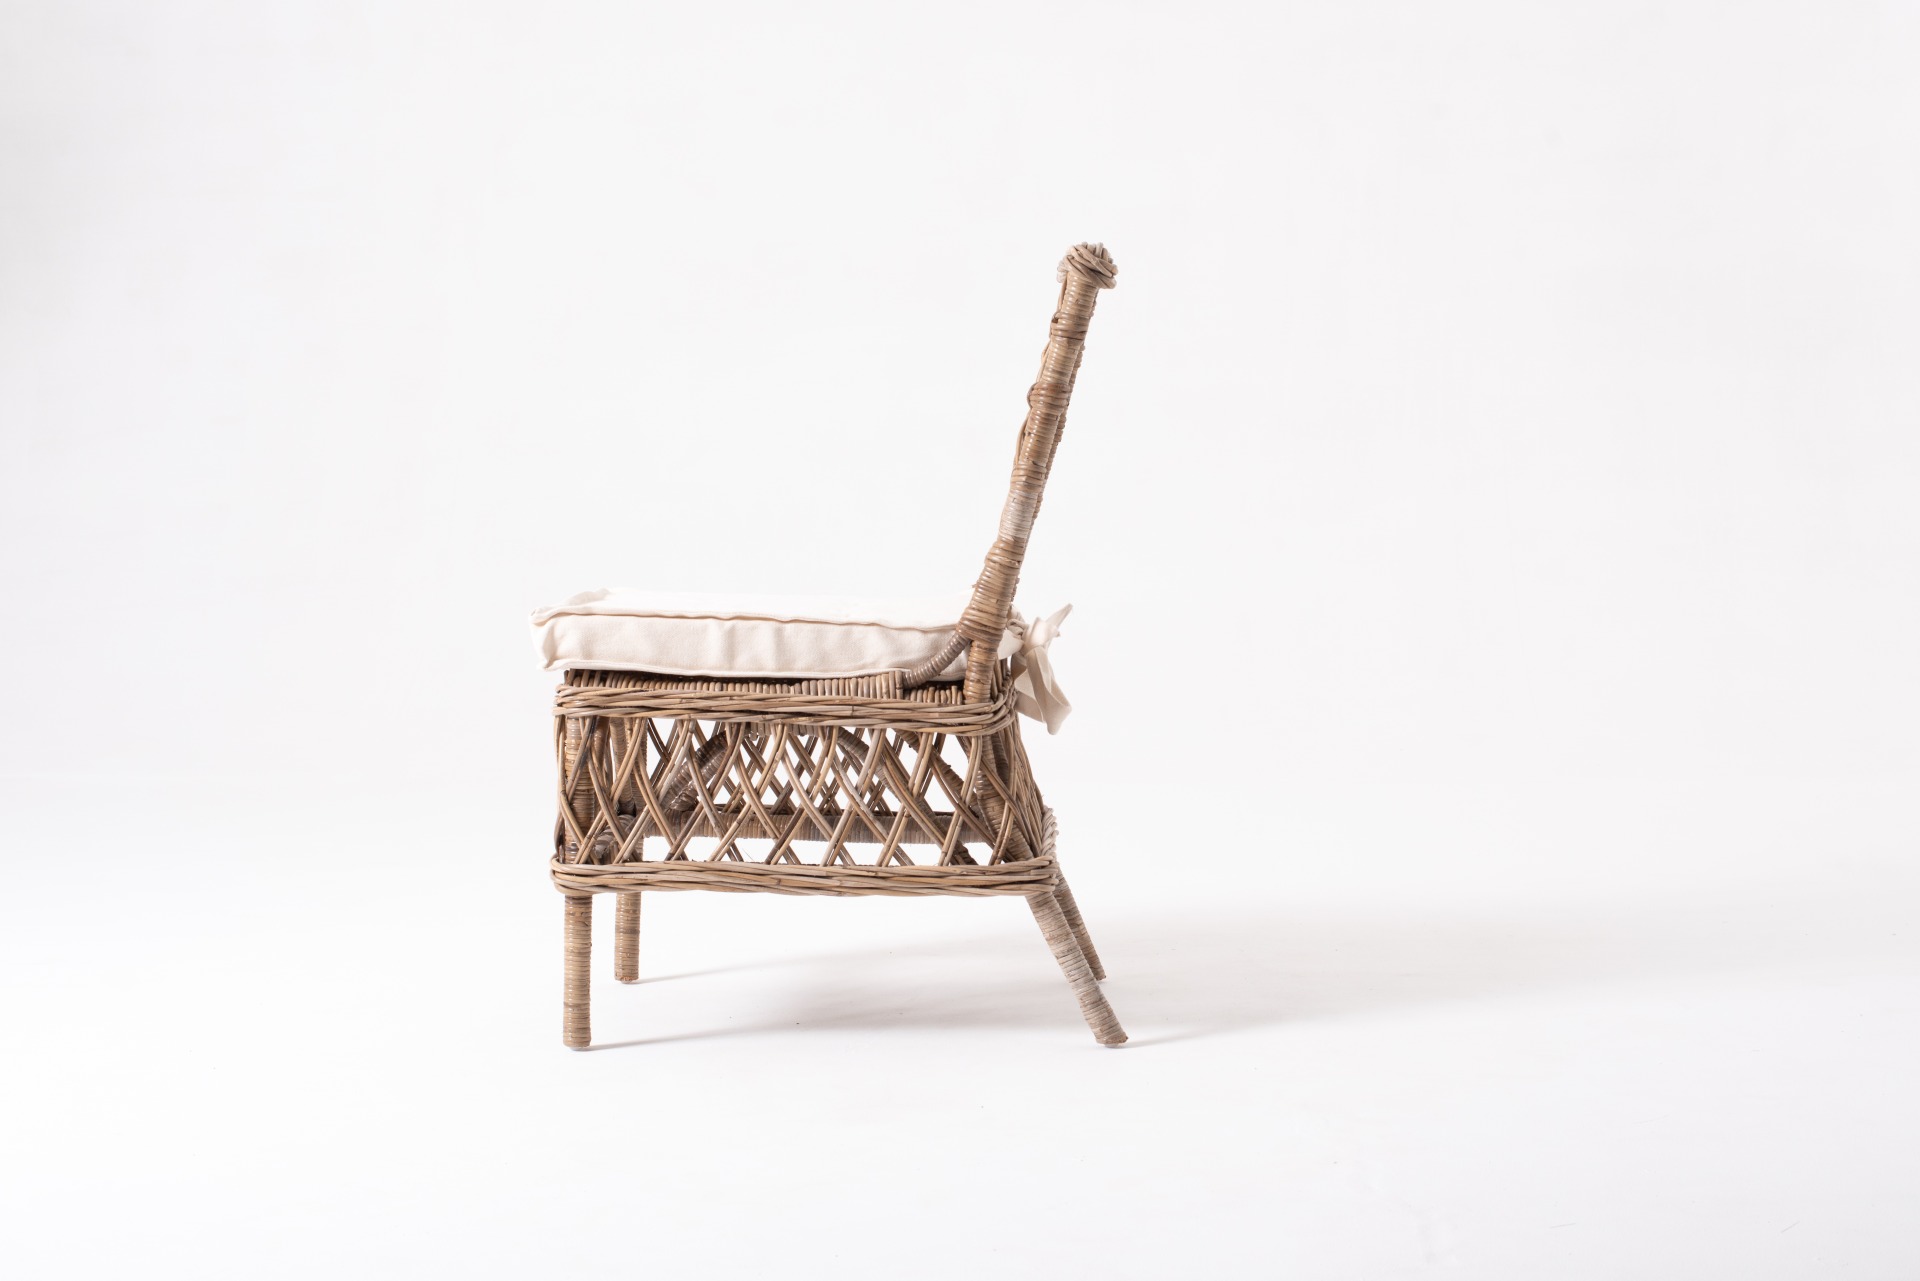 Der Stuhl Aristocrat überzeugt mit seinem Landhaus Stil. Gefertigt wurde er aus Kabu Rattan, welches einen braunen Farbton besitzt. Der Stuhl ist im 2er-Set erhältlich. Die Sitzhöhe beträgt beträgt 46 cm.